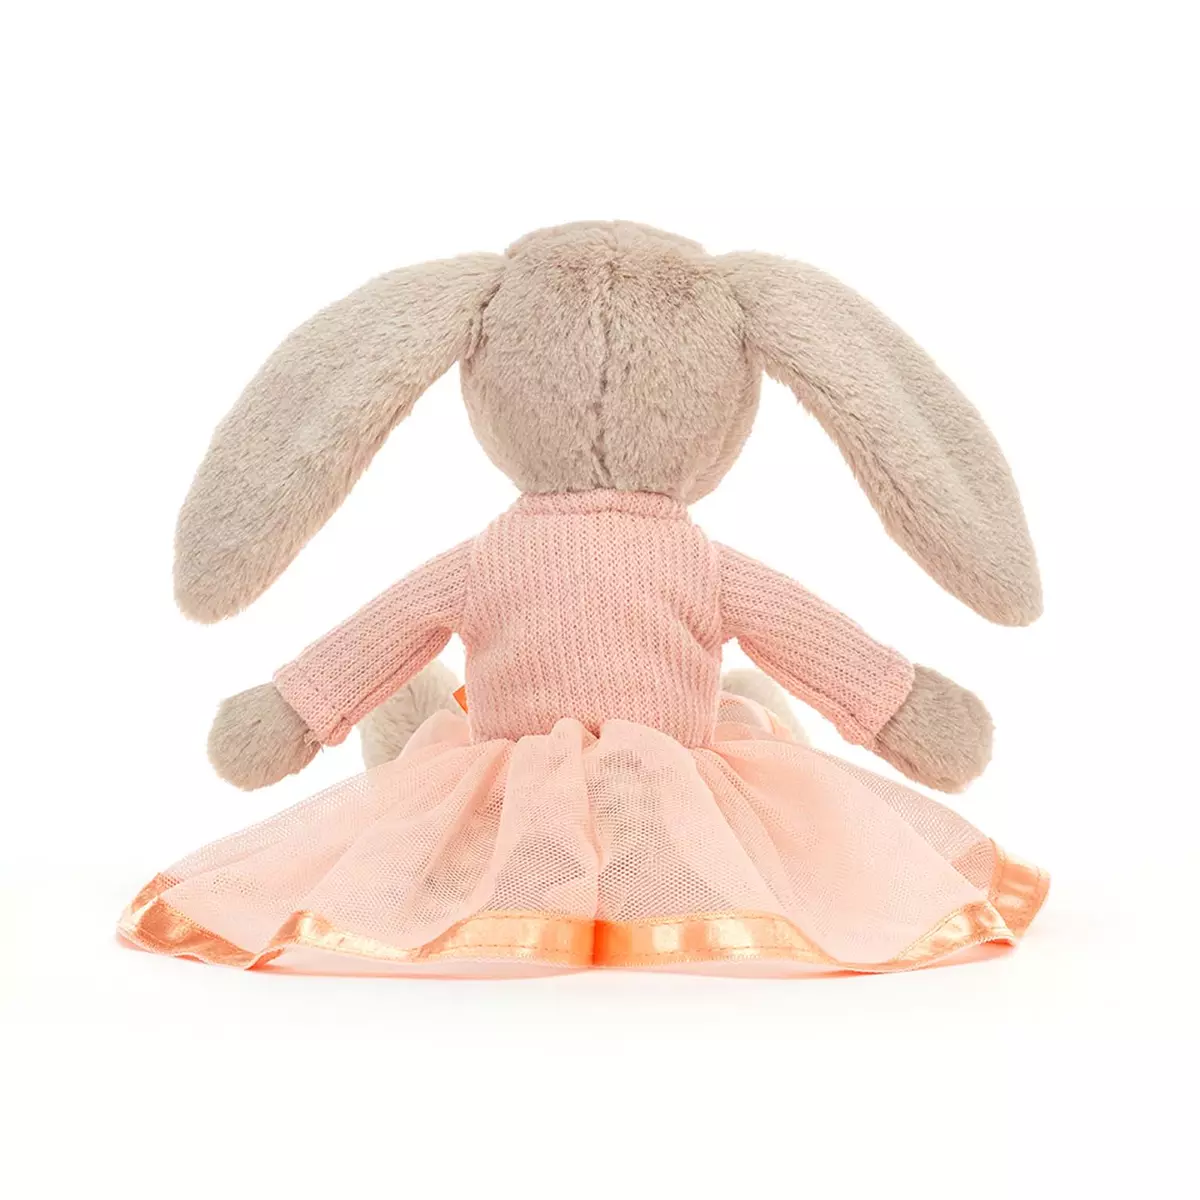 Jellycat - Lottie Bunny Ballet - image 3